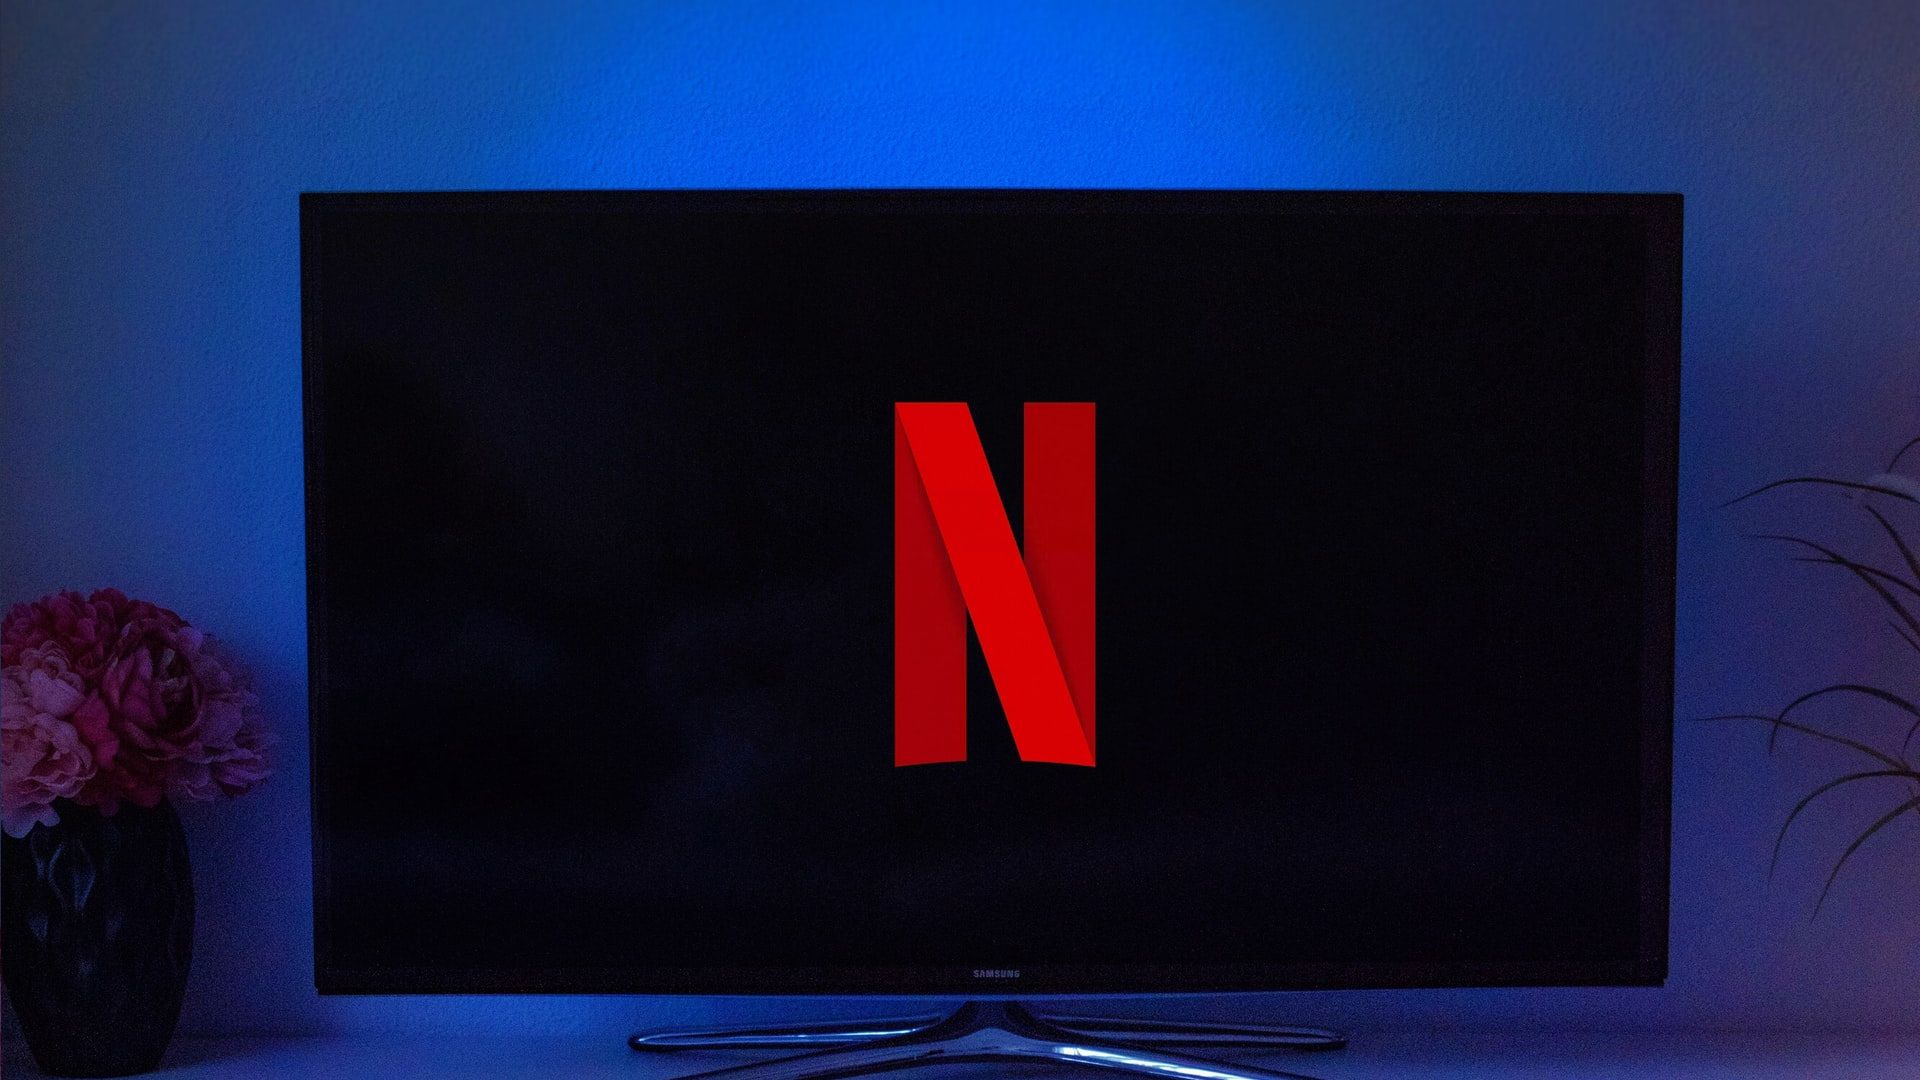 A sua conta Netflix está em uso em vários aparelhos; e agora? - Positivo do  seu jeito